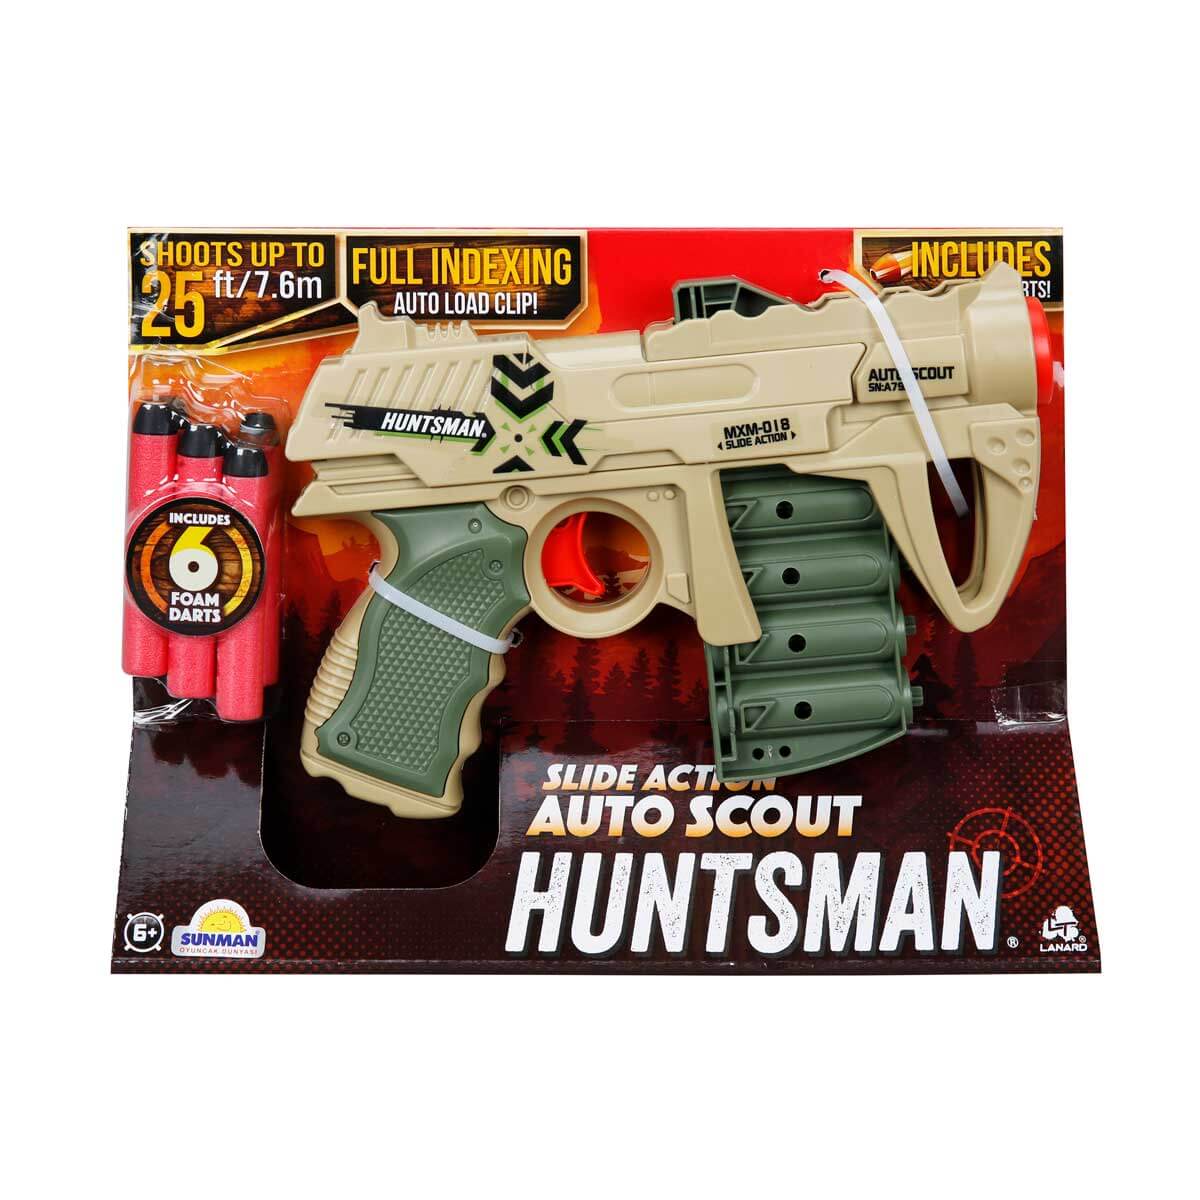 Huntsman Auto Scout